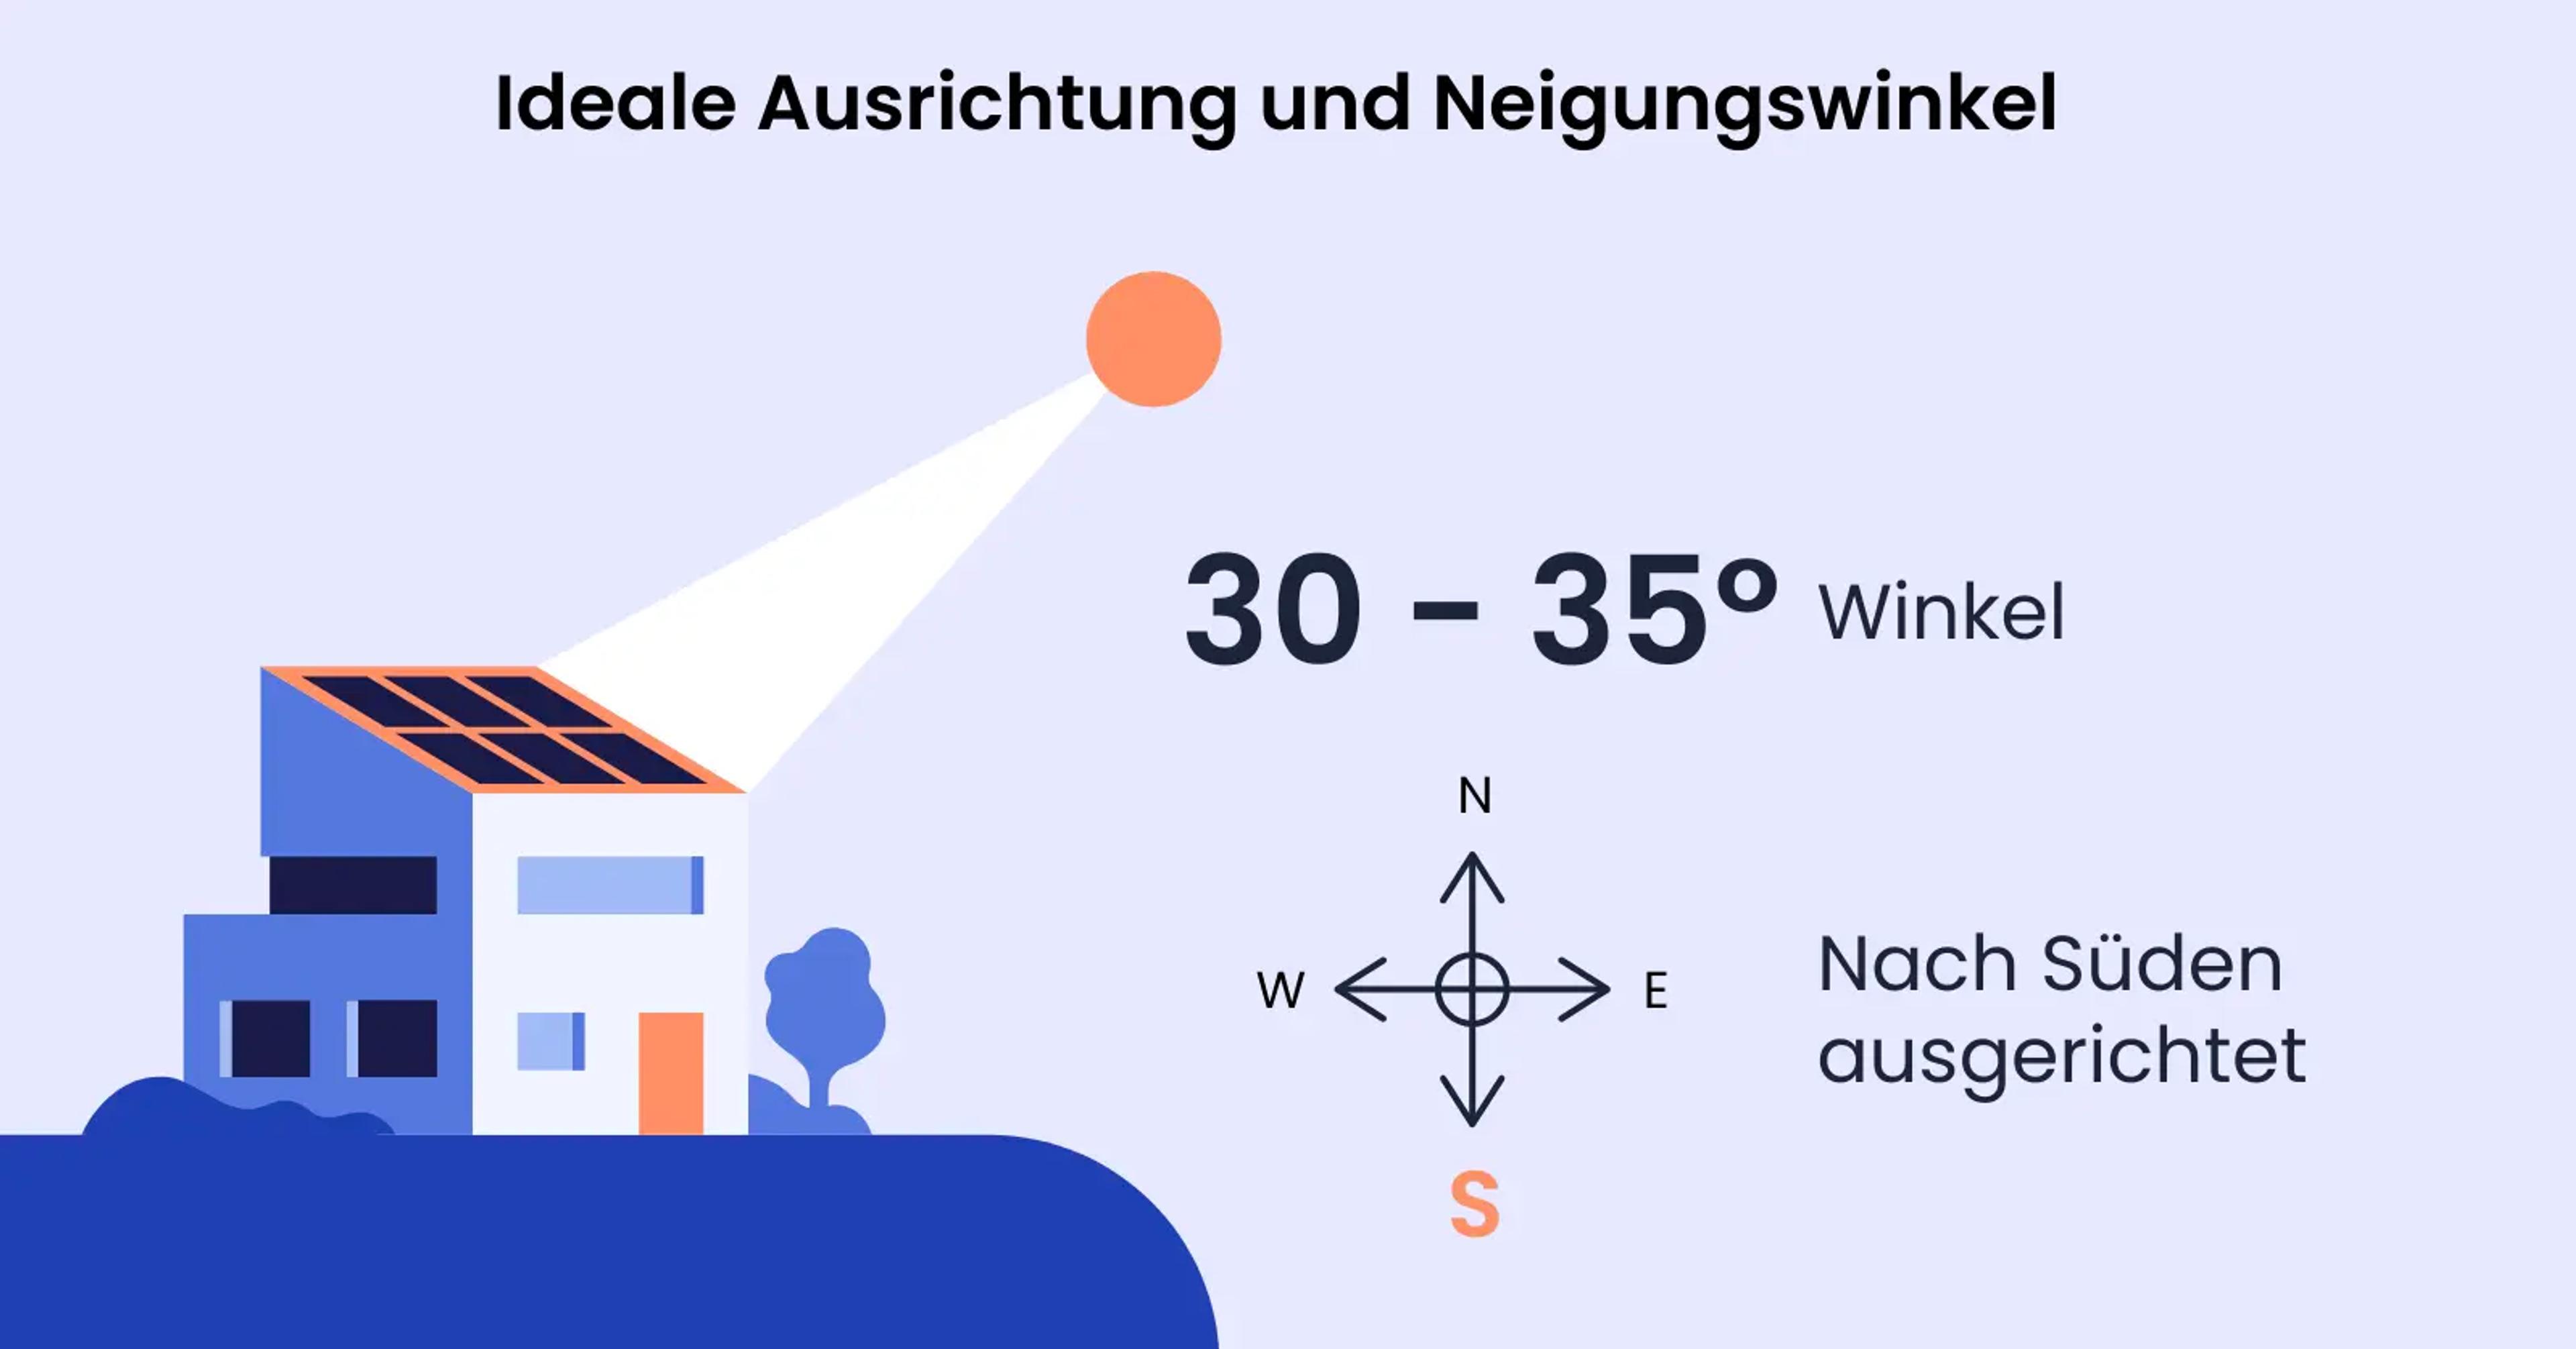 Eine Grafik, die die ideale Ausrichtung und den Neigungswinkel einer Solaranlage im Saarland zeigt.